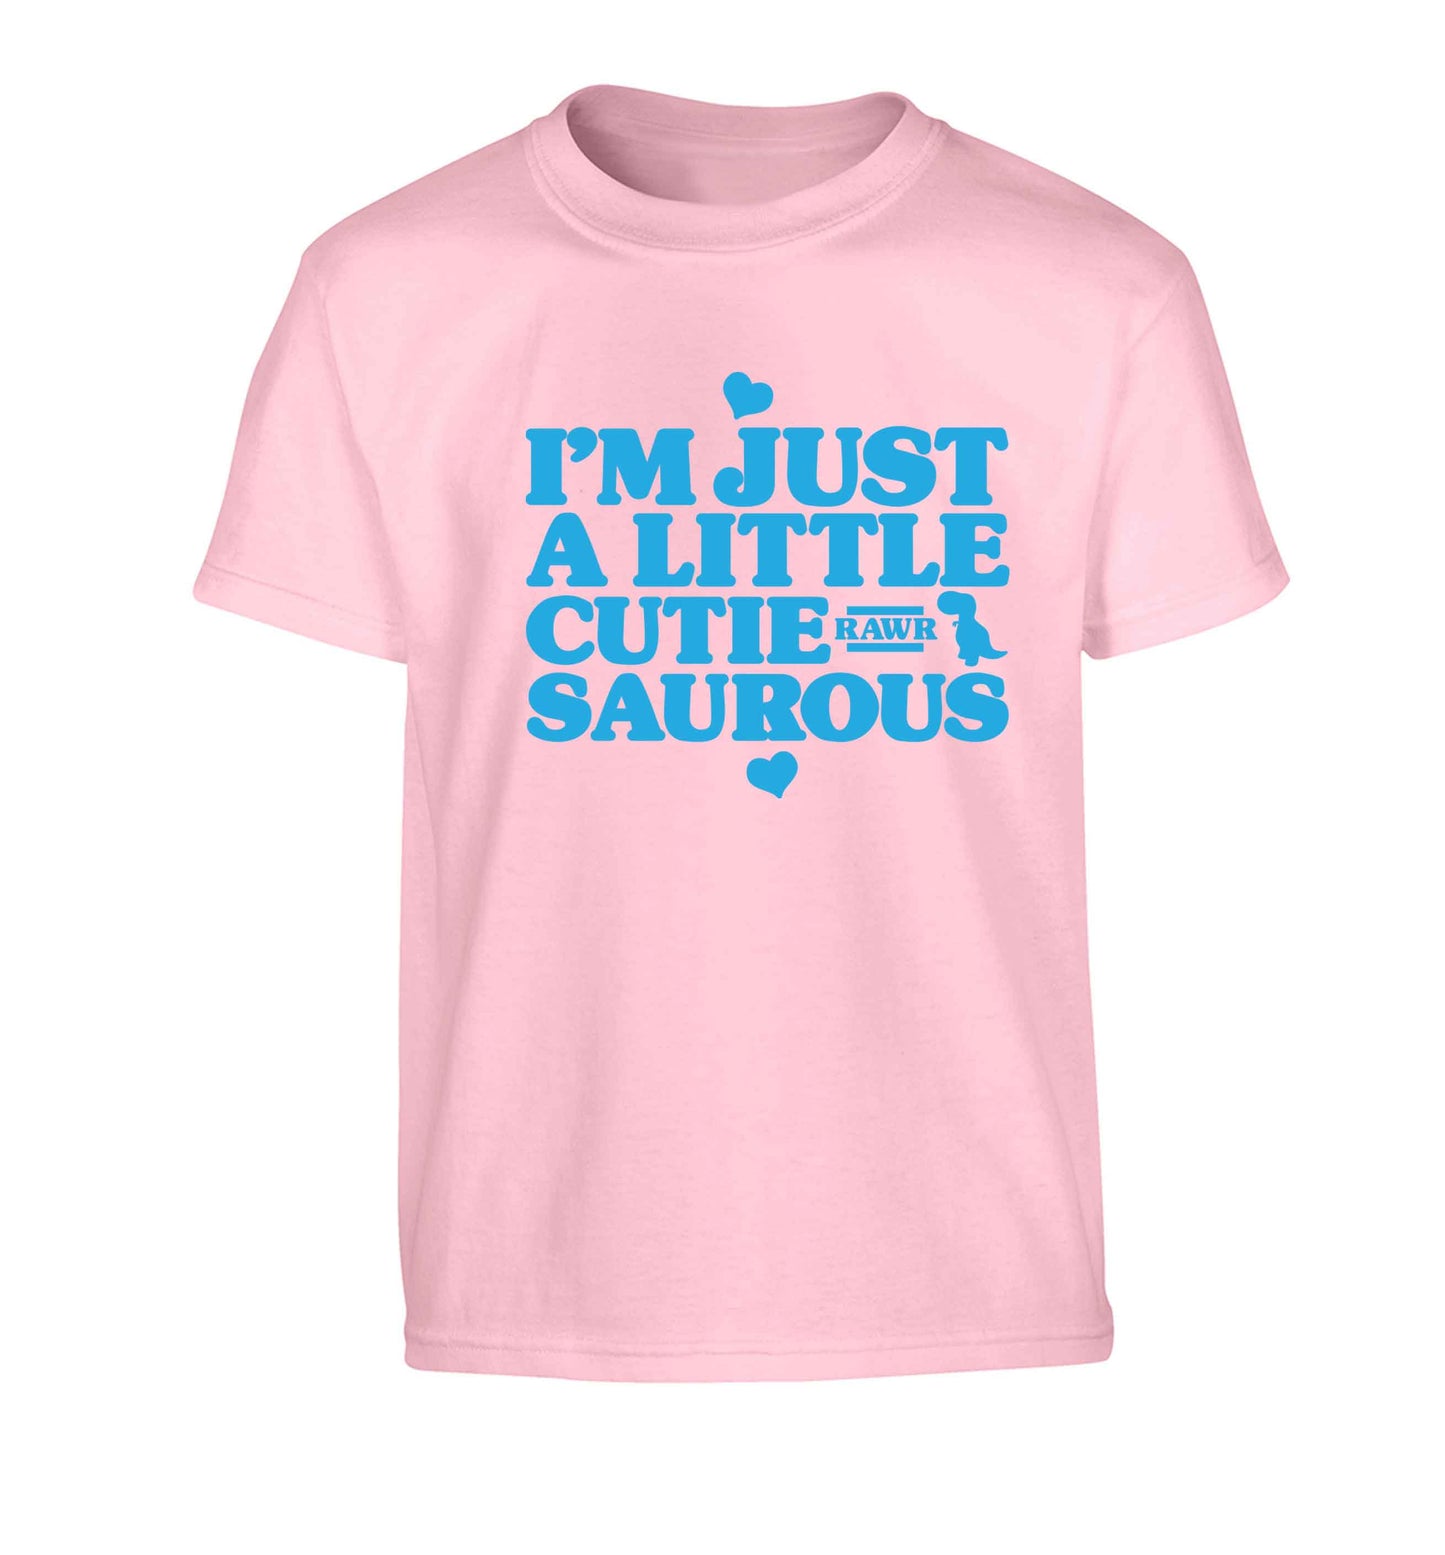 I'm just a little cutiesaurous Children's light pink Tshirt 12-13 Years